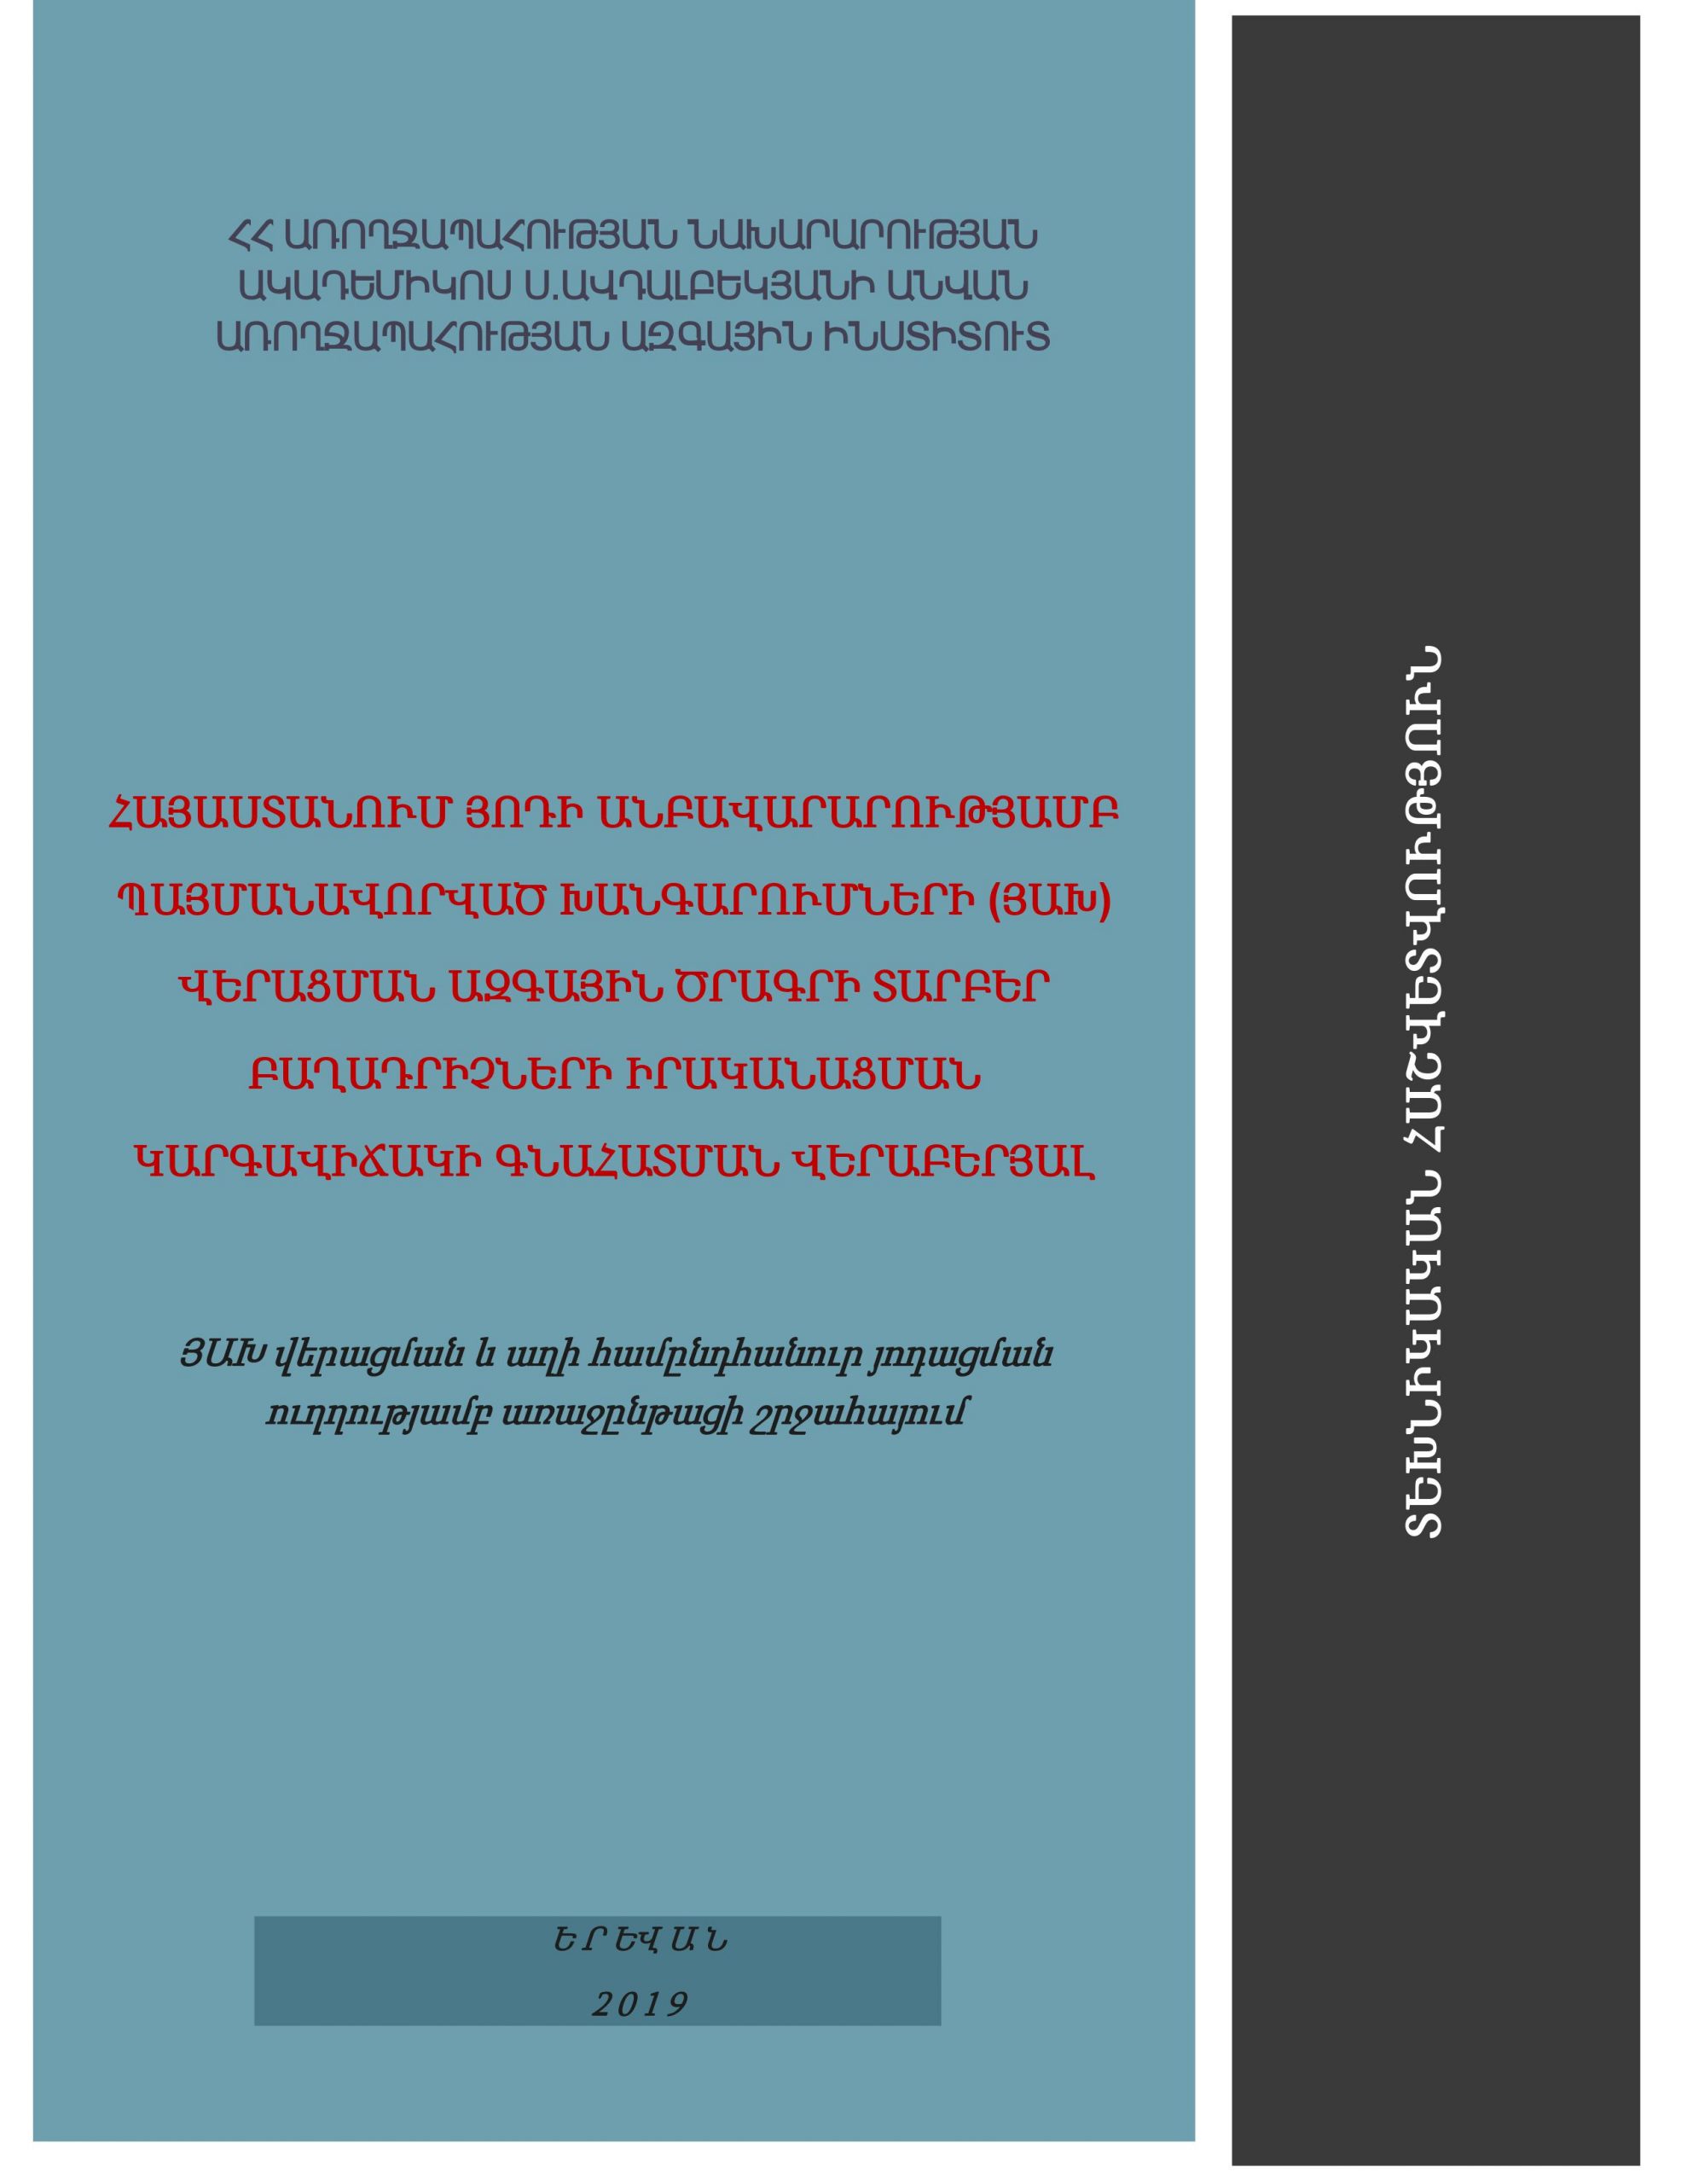 Технический отчет об оценке состояния реализации различных компонентов Национальной программы по ликвидации йододефицитных заболеваний (ВМС) в Армении